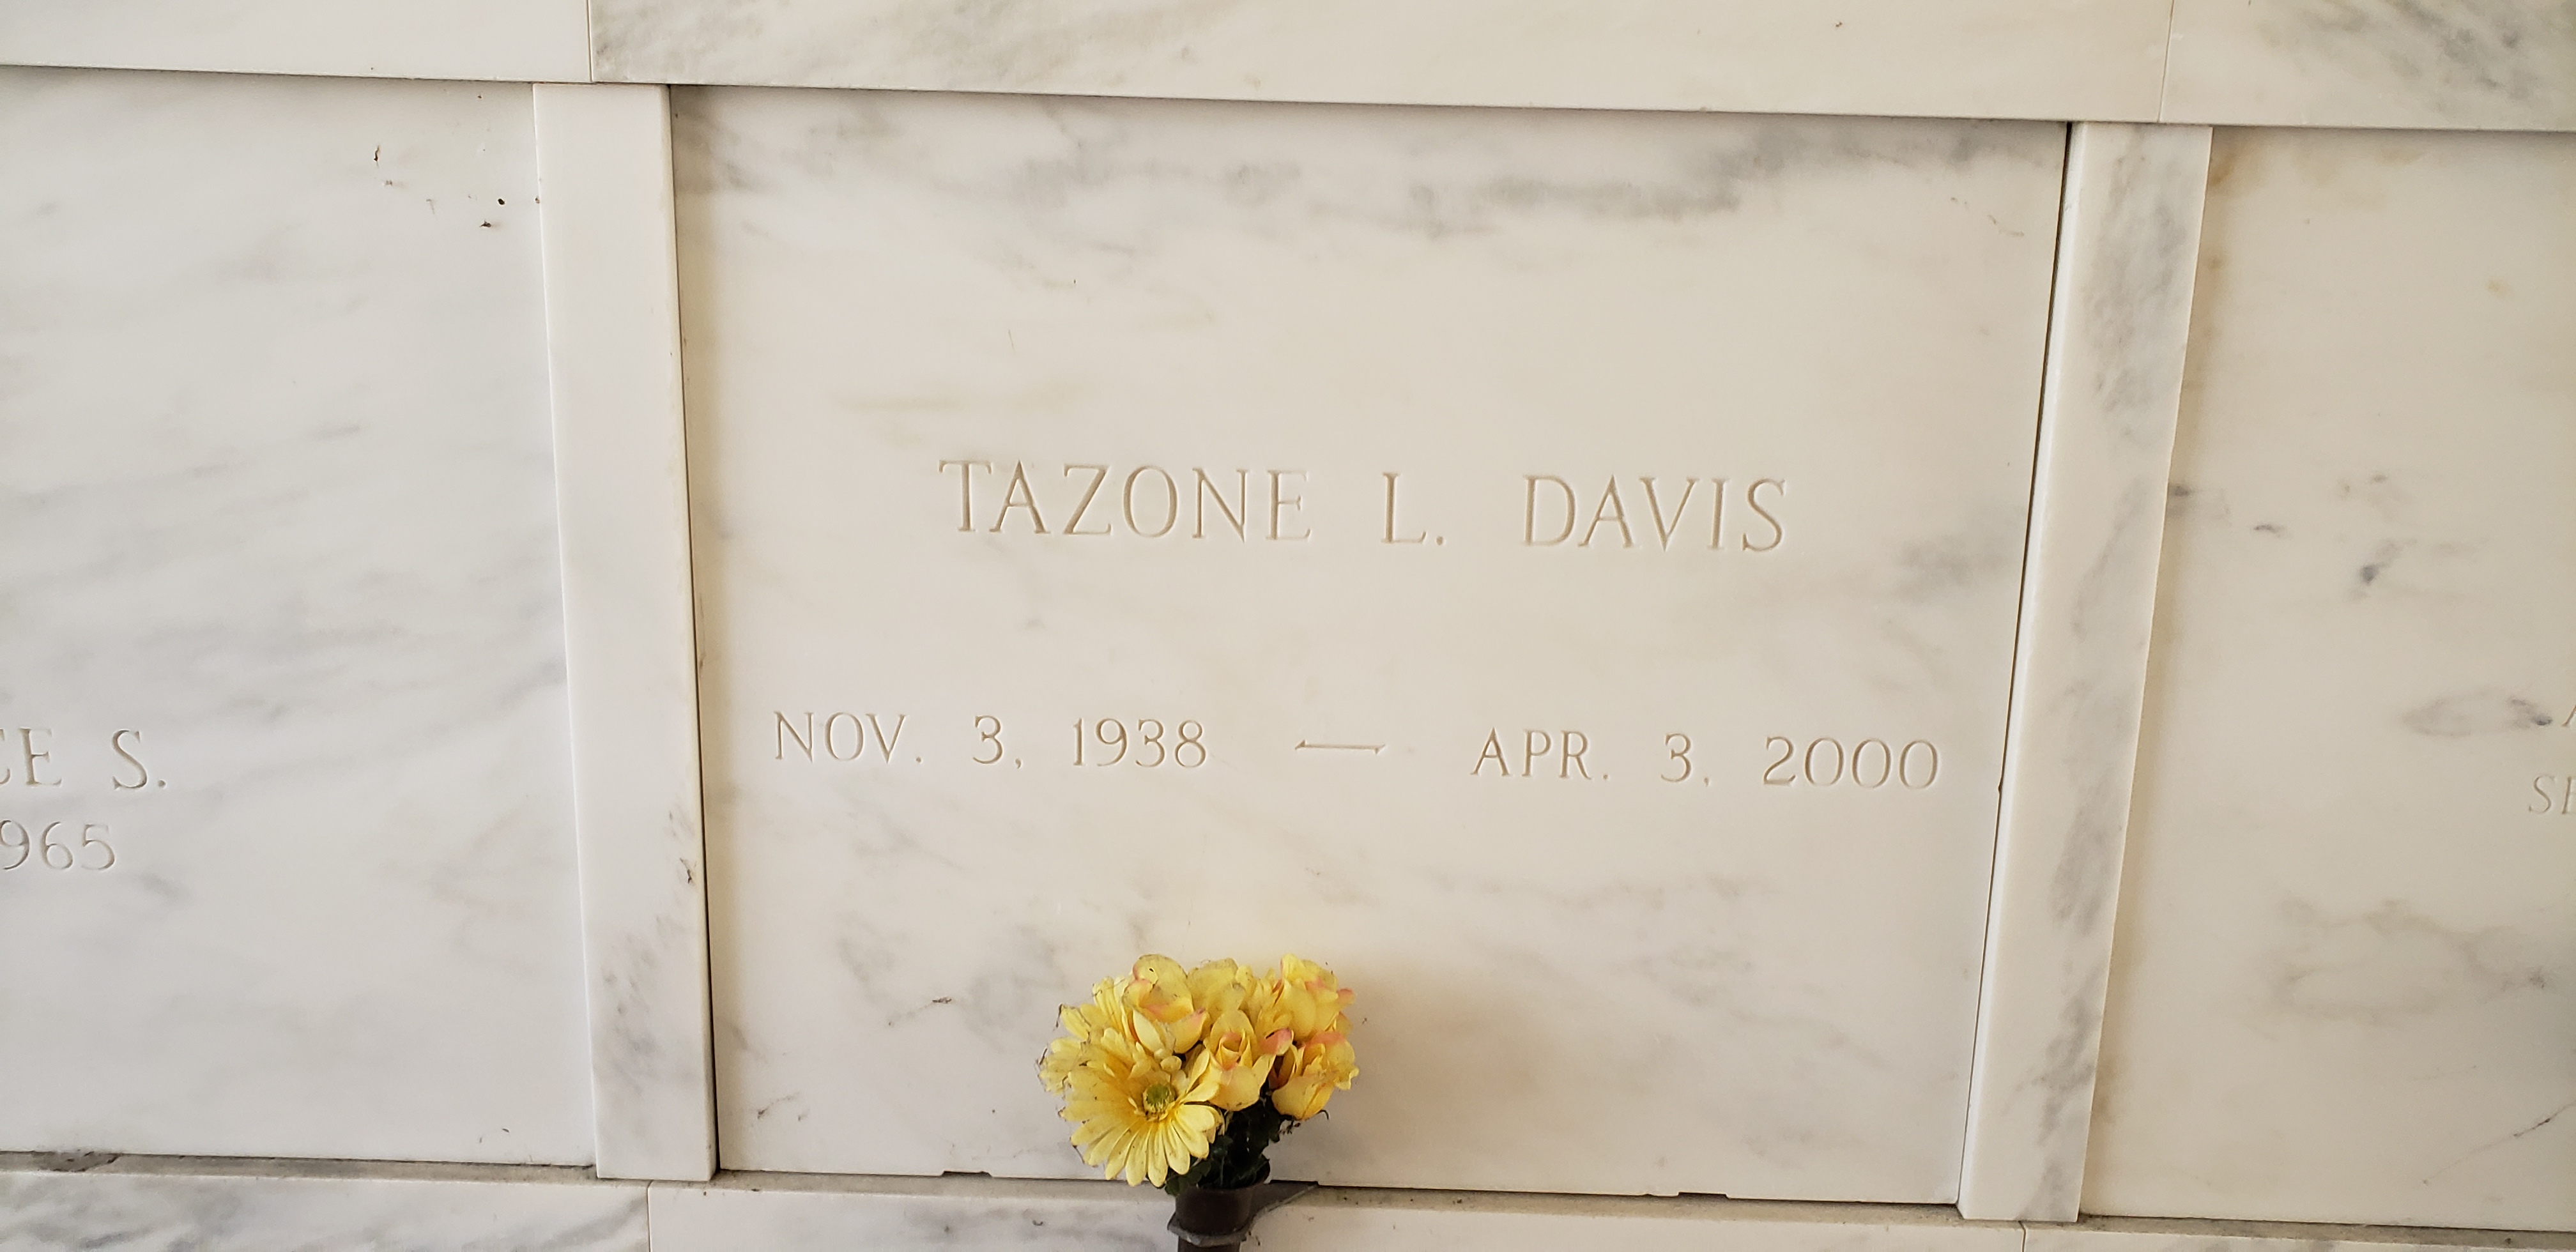 Tazone L Davis